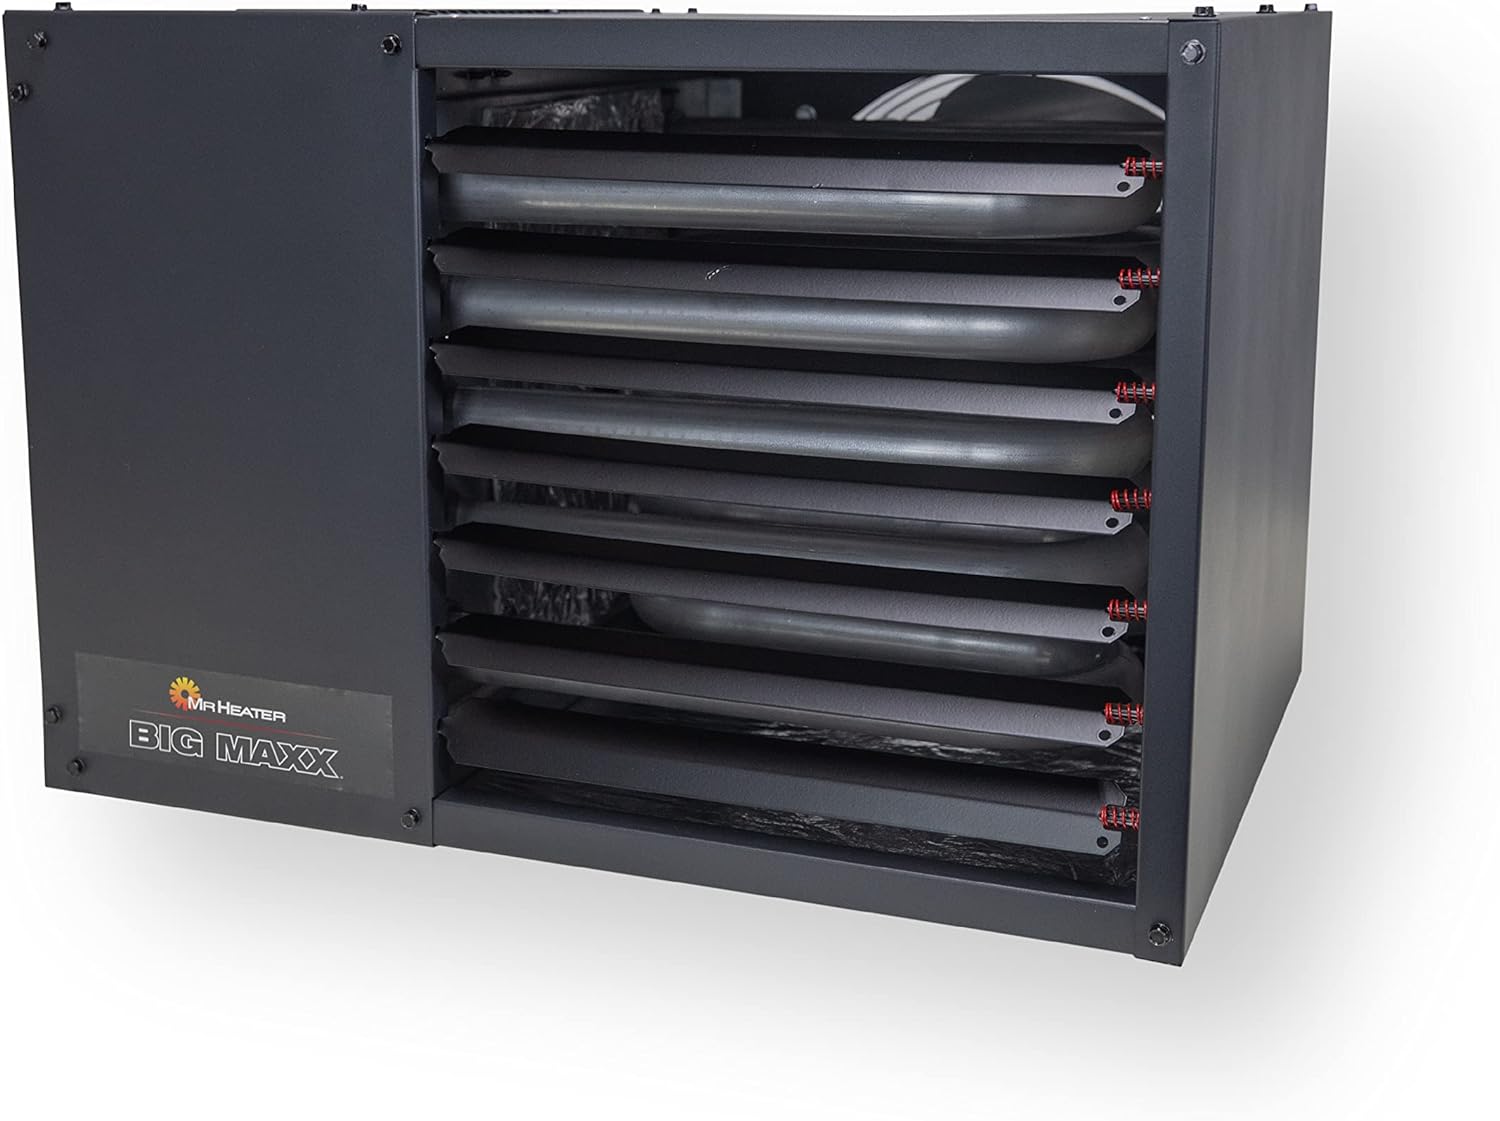 Mr. Heater F260560 Big Maxx MHU80NG Natural Gas Unit Heater,Black, 80,000 BTU
